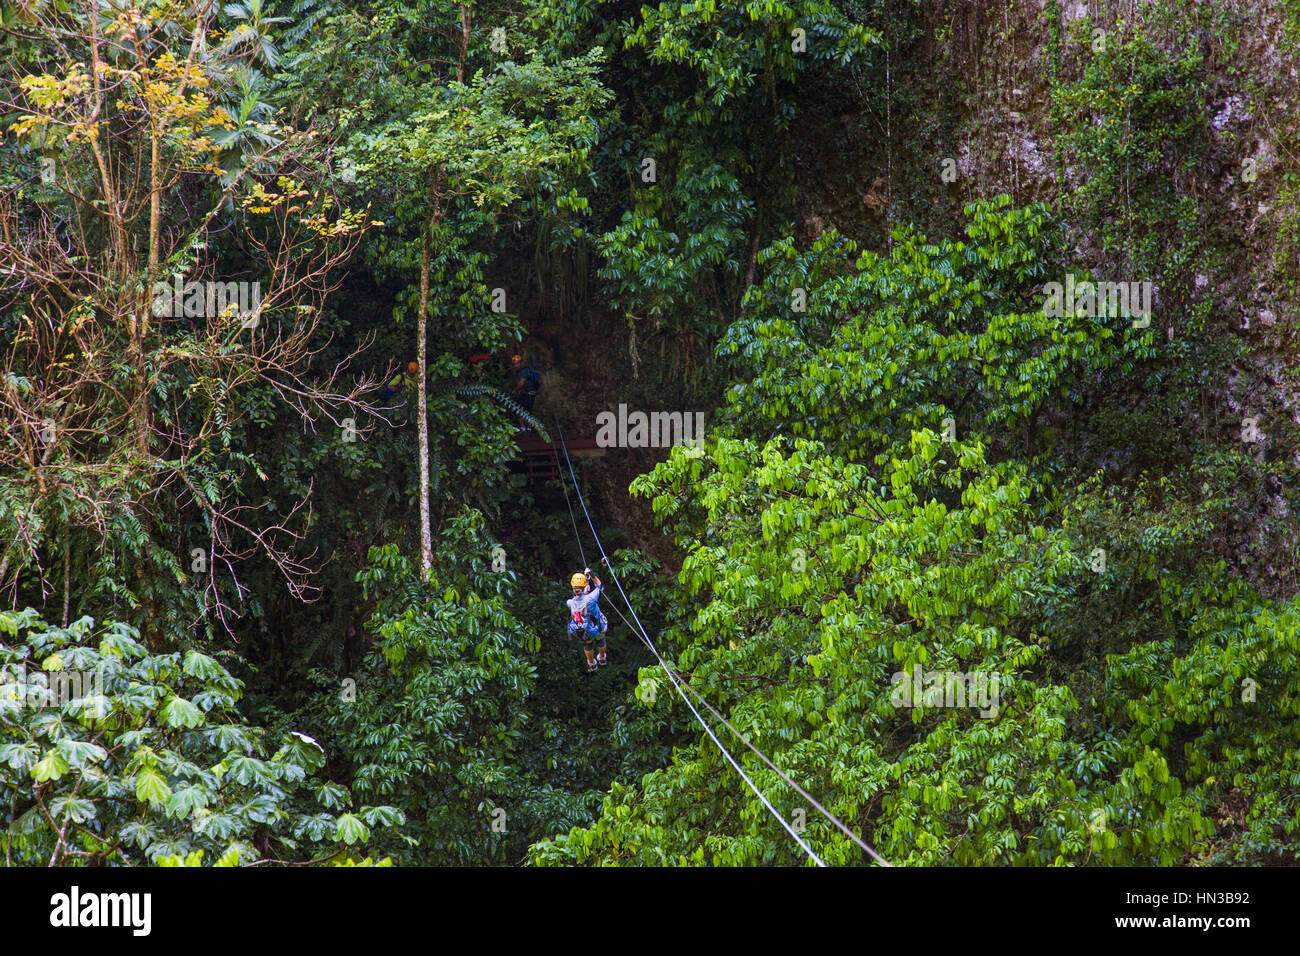 Eine junge Frau reitet auf eine Seilrutsche durch einen Wald In Puerto Rico Stockfoto